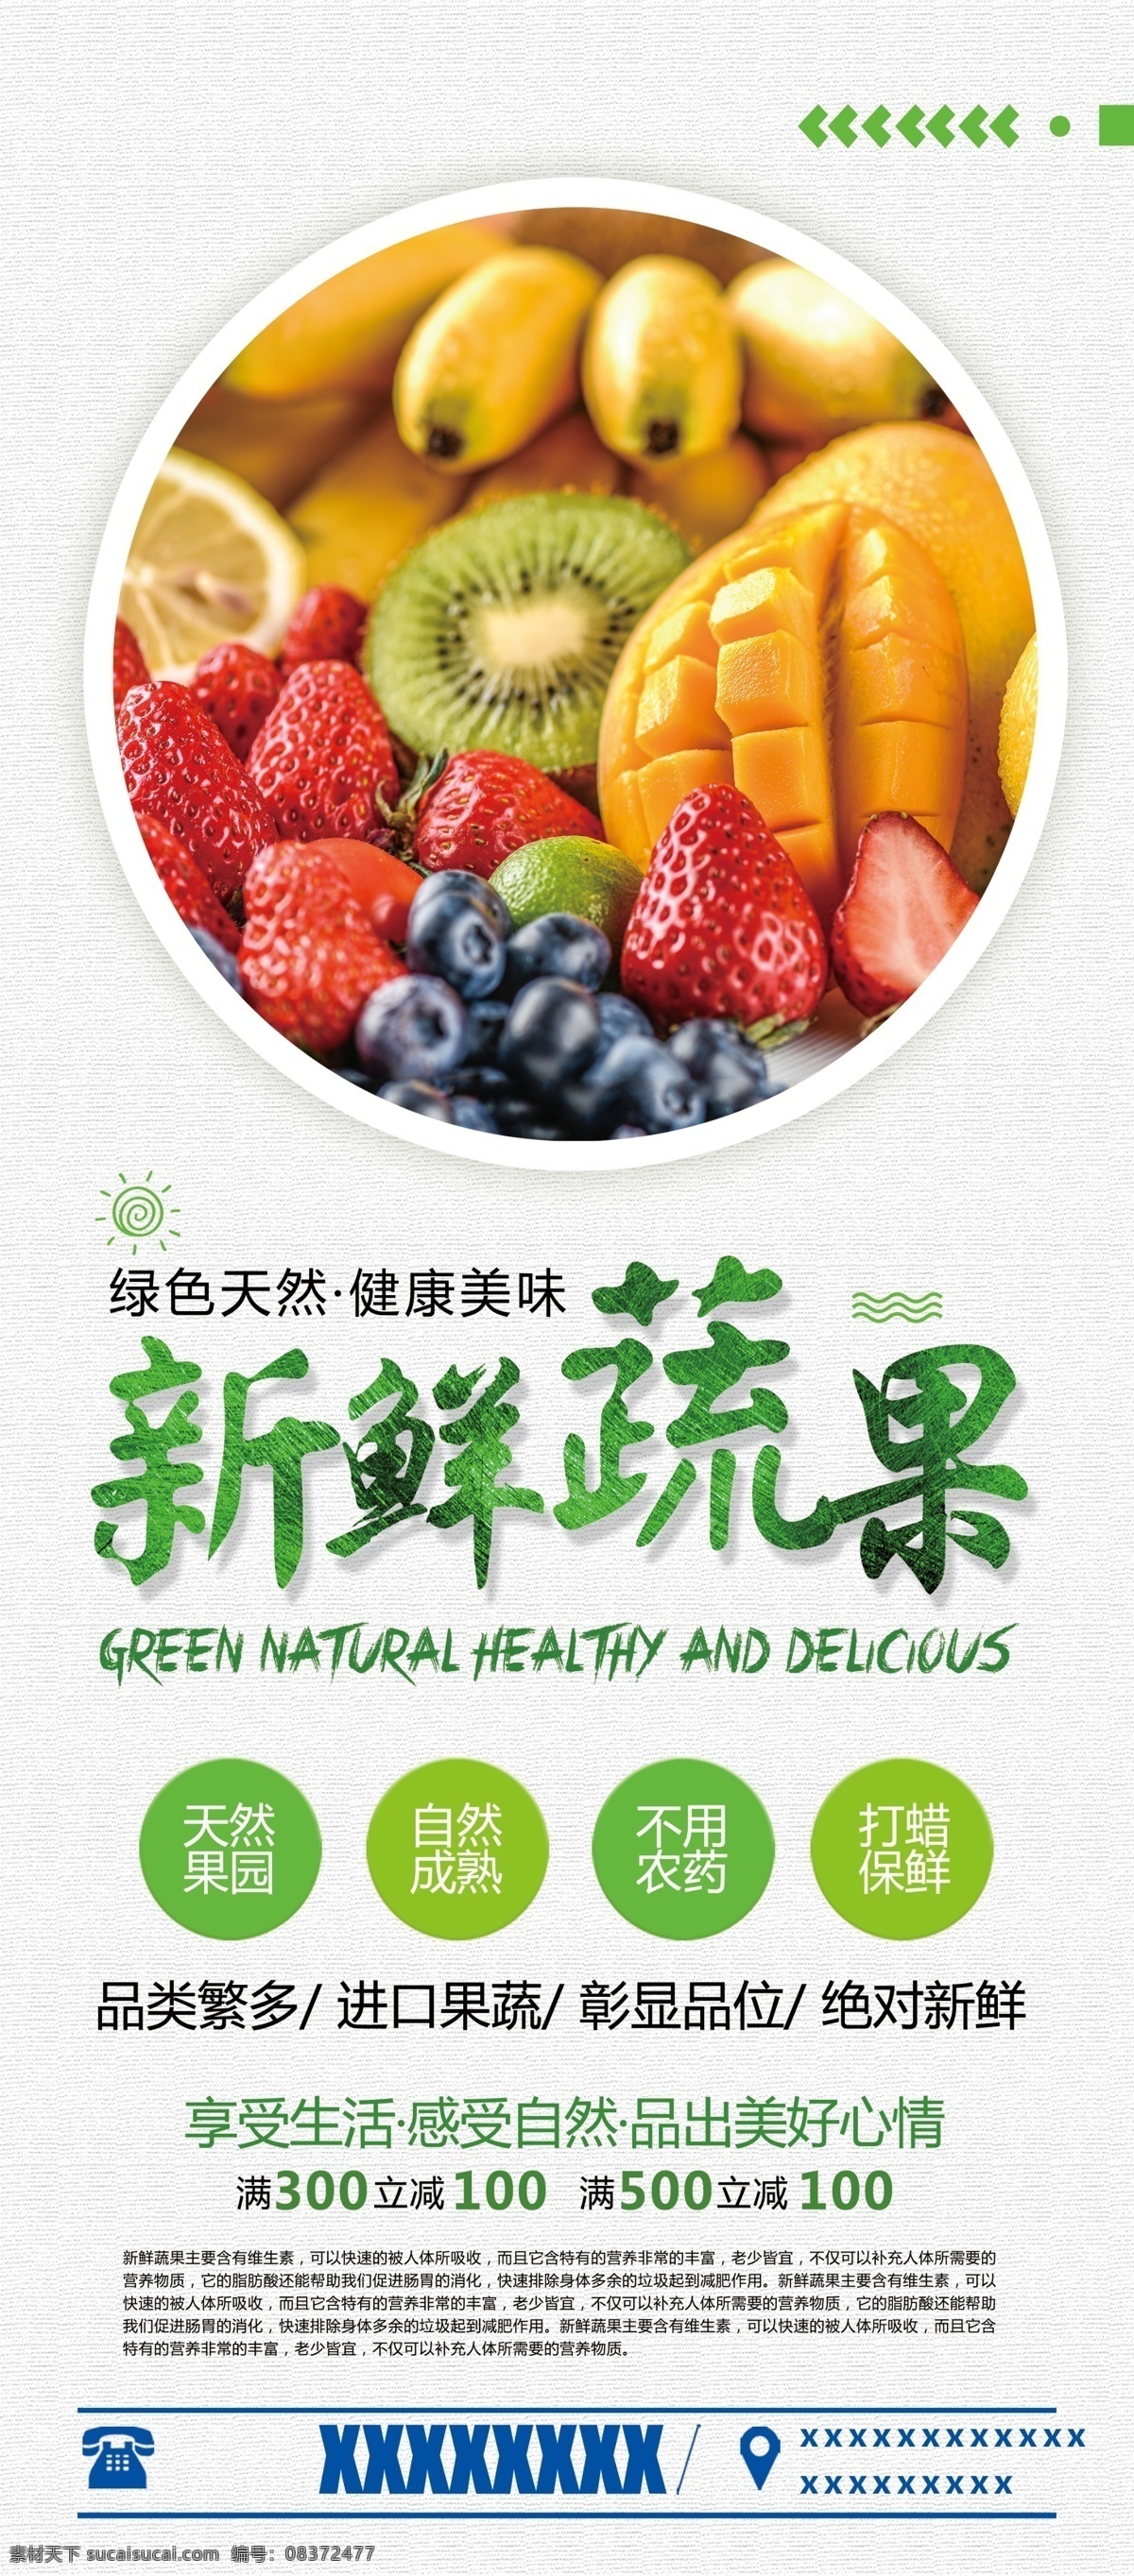 简约 中国 风 新鲜 蔬果 水果 生鲜 中国风 新鲜蔬果 宣传 促销 菜单菜谱